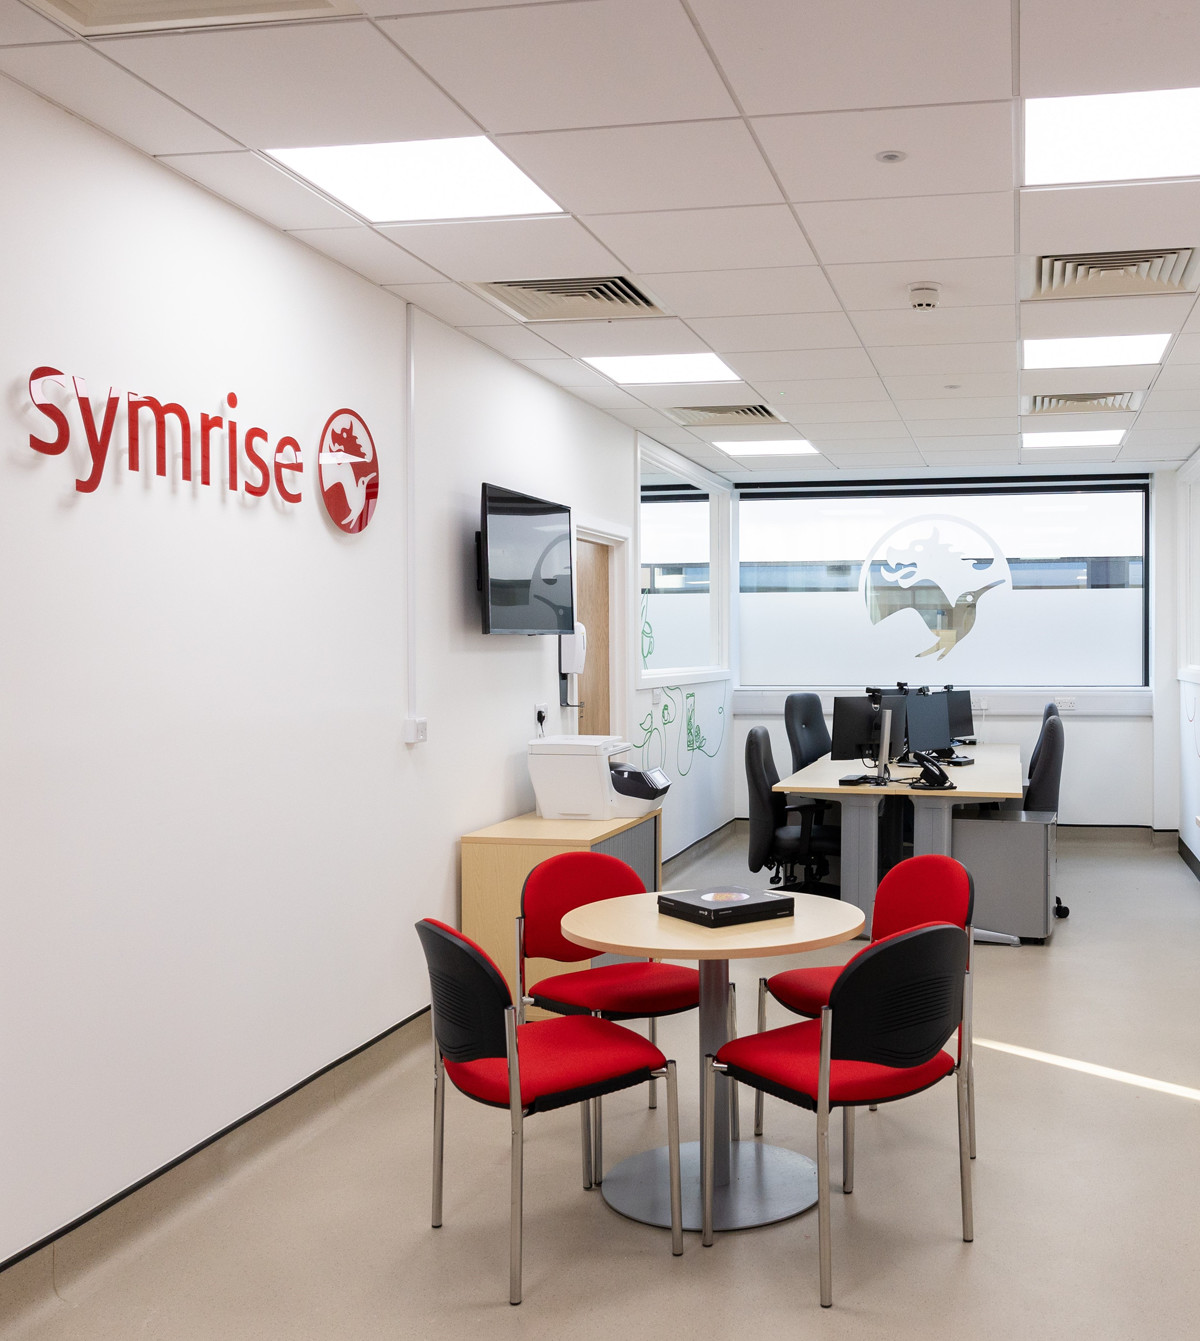 Symrise eröffnet Innovationslabor im Colworth Science Park in Großbritannien